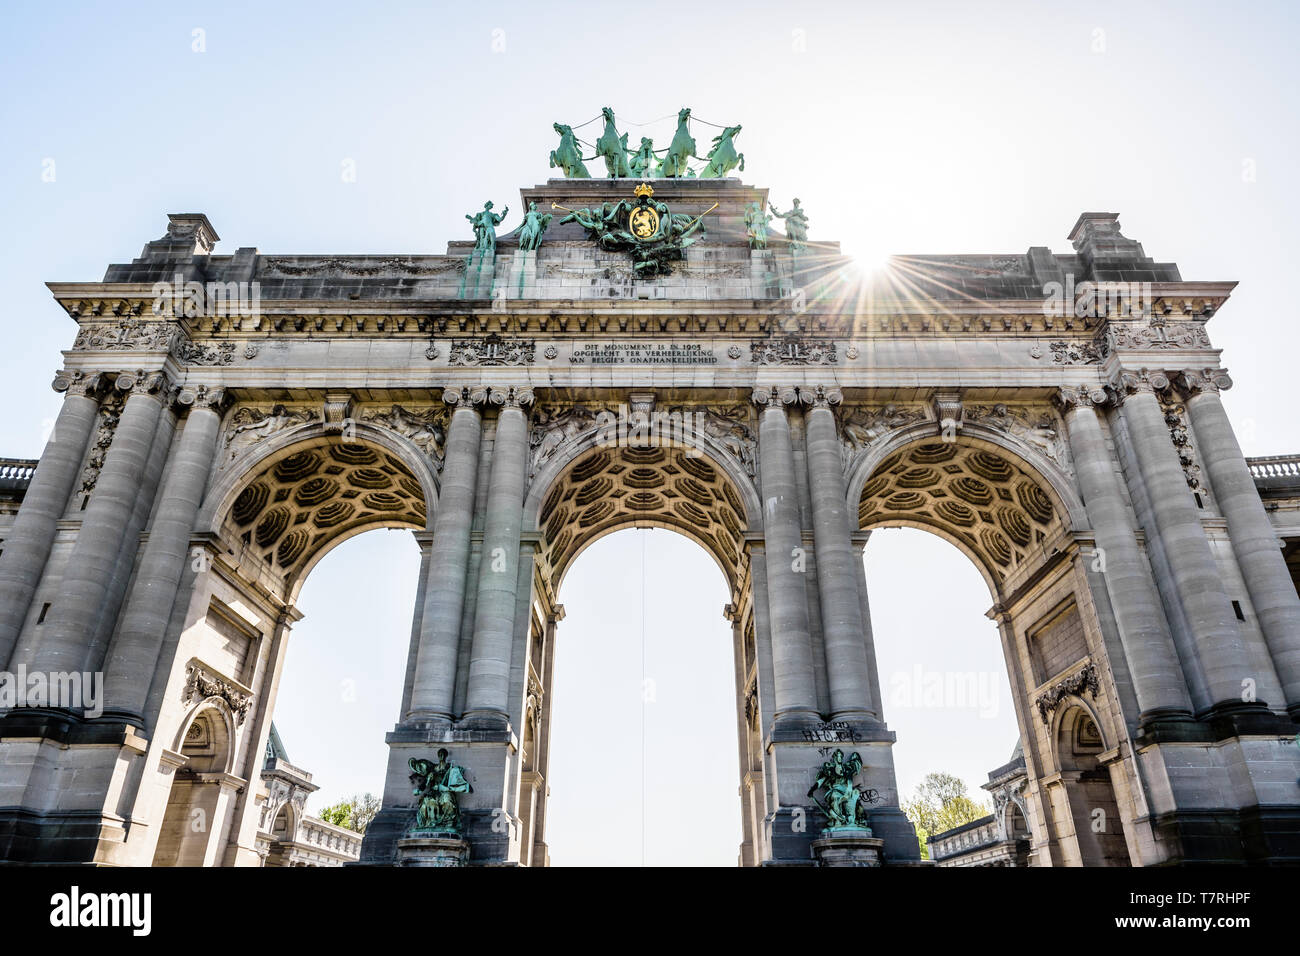 Basso angolo di visione dell'arcade du Cinquantenaire, l'arco trionfale nel parco del Cinquantenario di Bruxelles in Belgio contro la luce del sole. Foto Stock